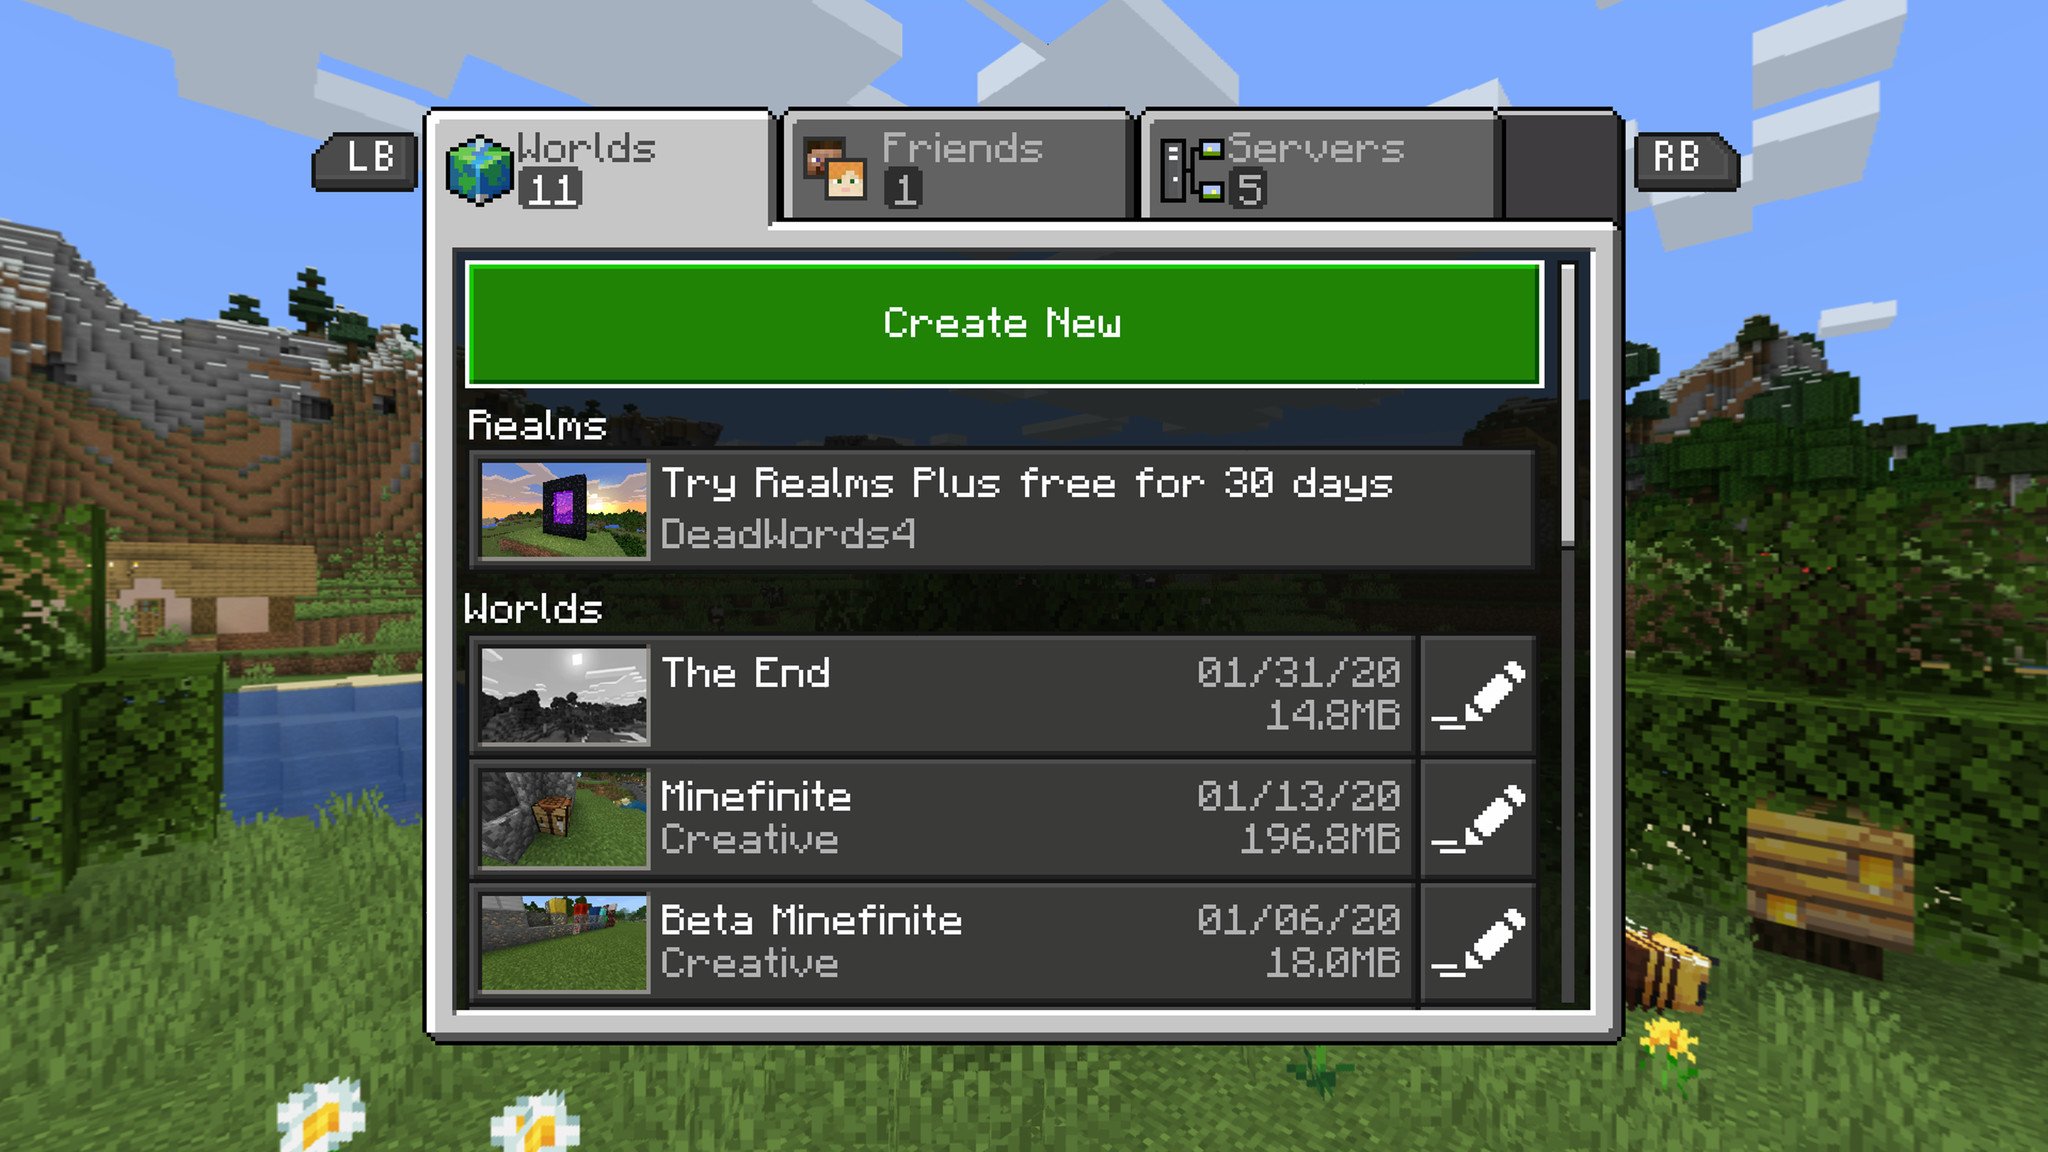 Minecraft "Create New" button